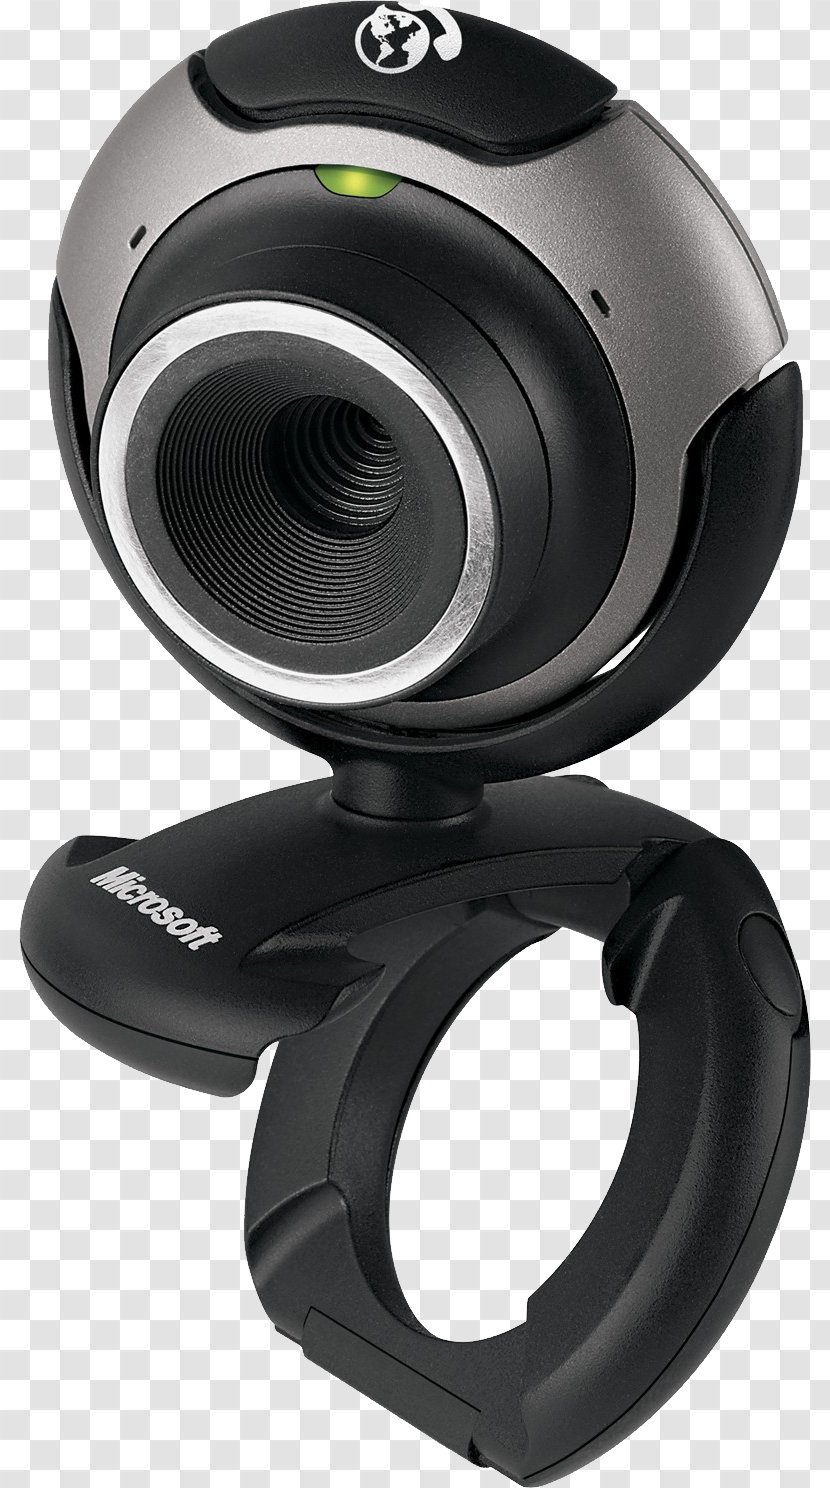 Amazon.com Webcam Microsoft LifeCam Camera - Electronics - Web Transparent PNG